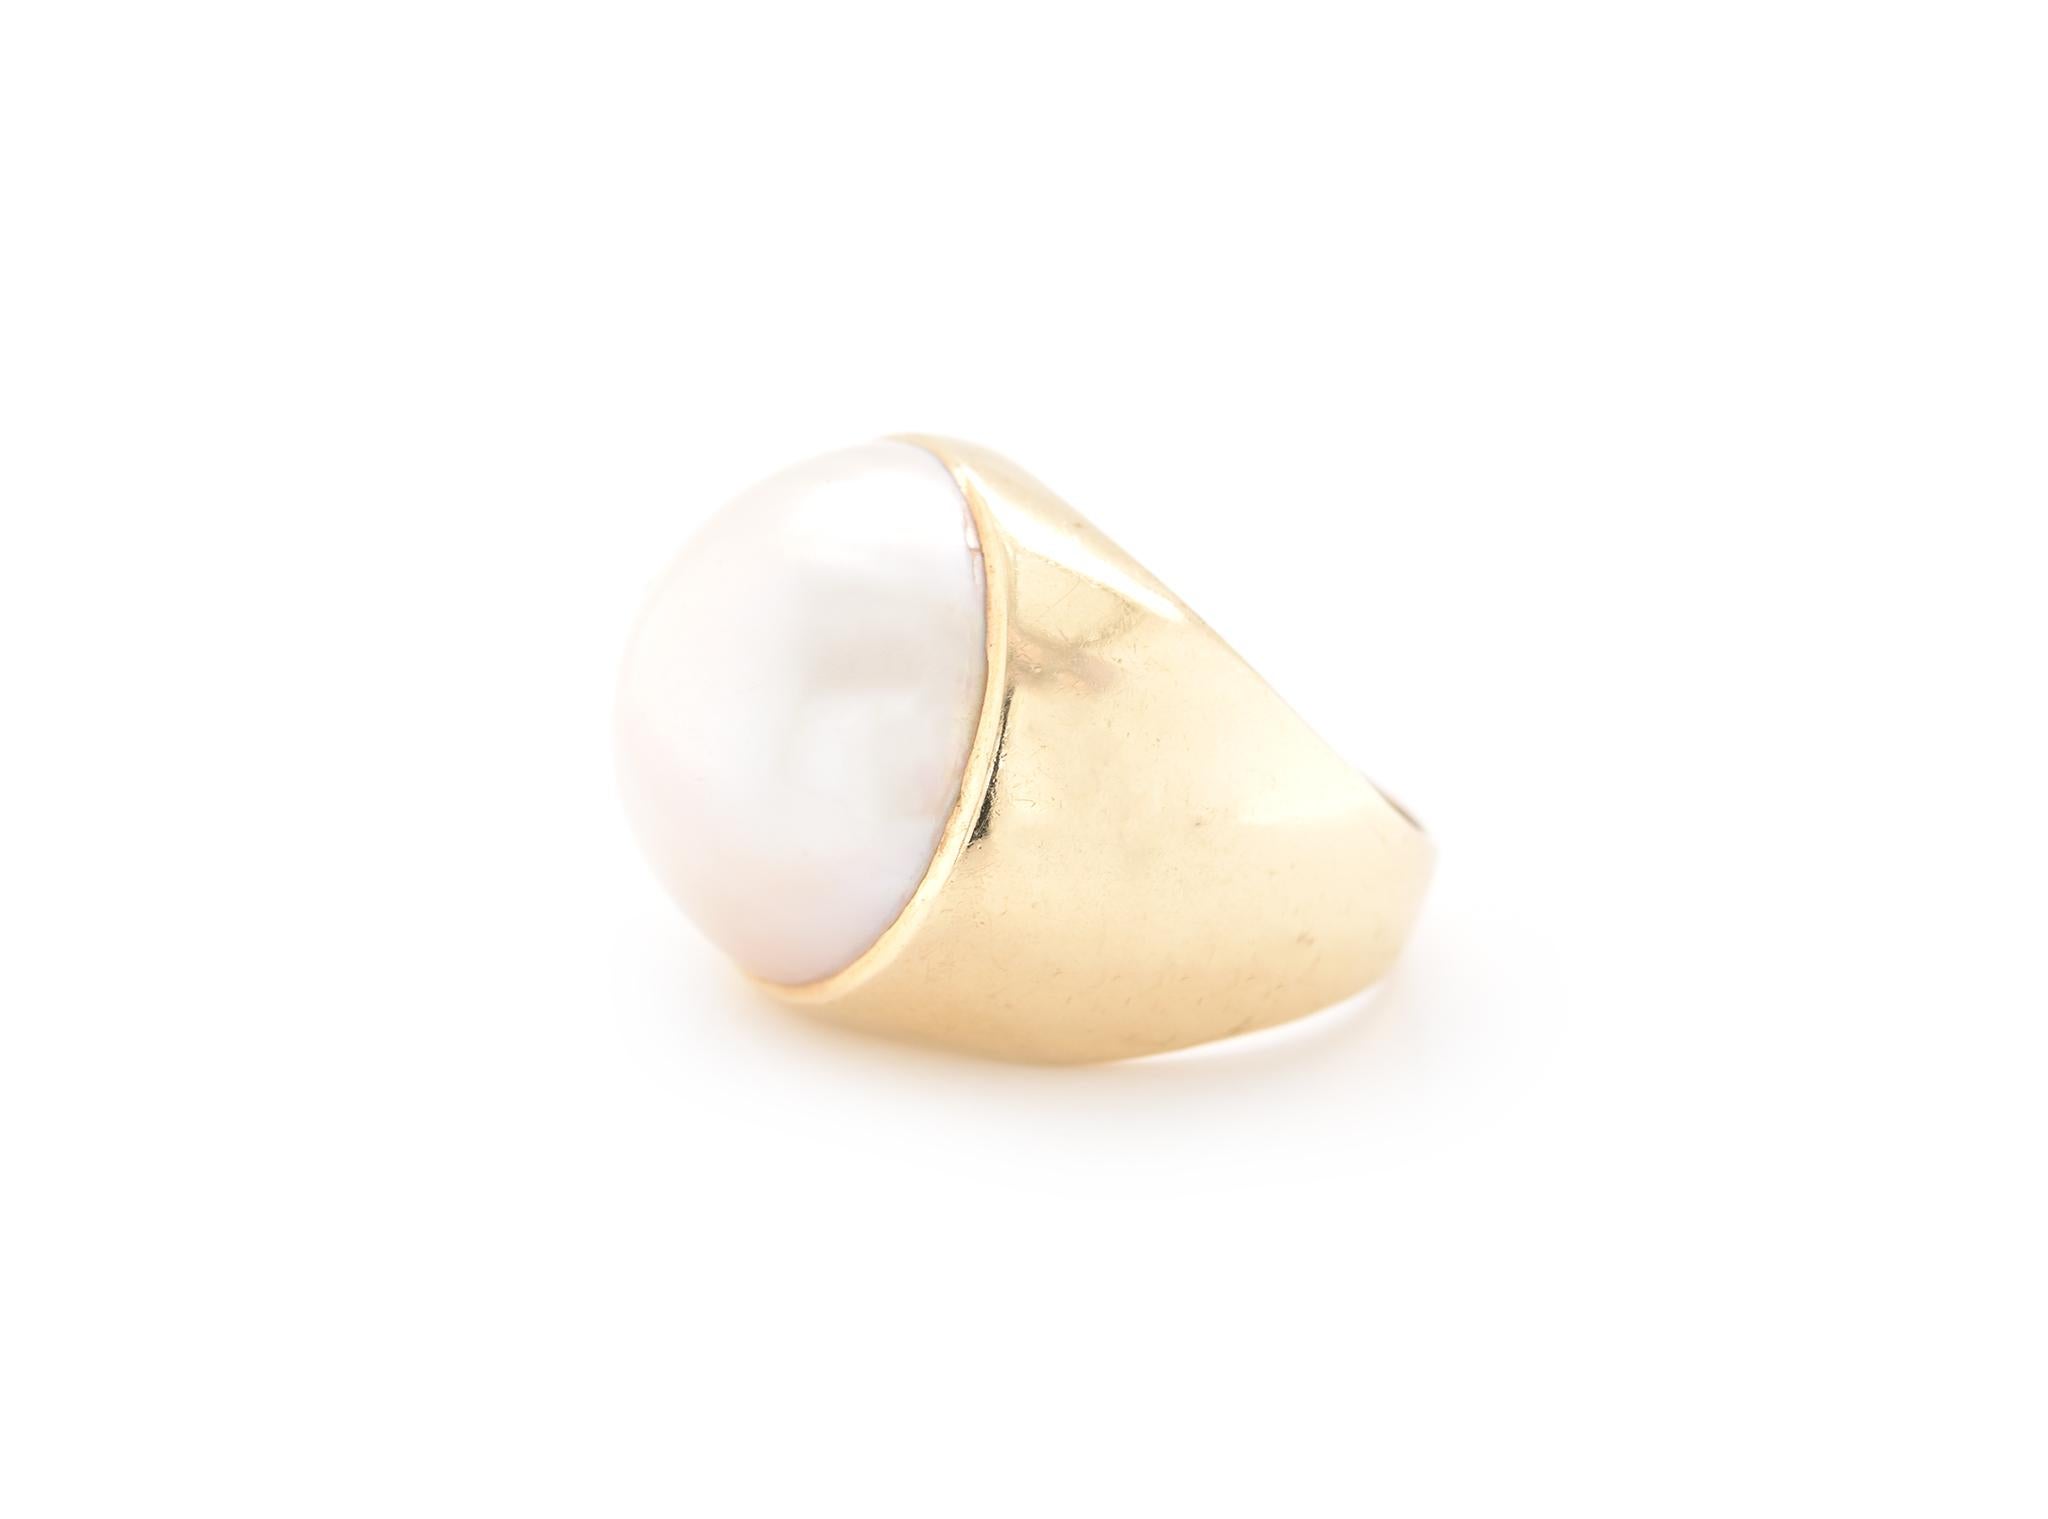 Designer: Sonderanfertigung
MATERIAL: 14k Gelbgold
Perle: Mabe-Perle = 17.70mm
Ringgröße: 6 ¾ (bitte erlauben Sie zwei zusätzliche Versandtage für Größenanfragen)
Abmessungen: Die Ringspitze ist 19 mm breit. 
Gewicht: 11,30 Gramm